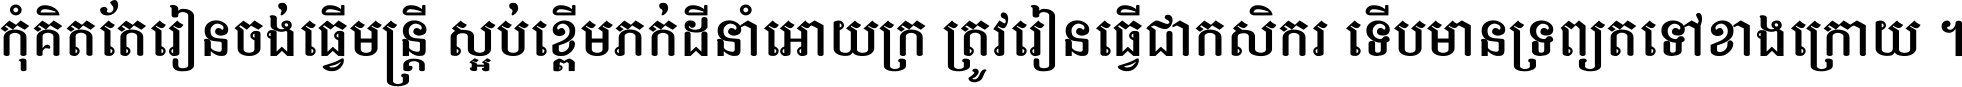 Khmer Chhay Text 2